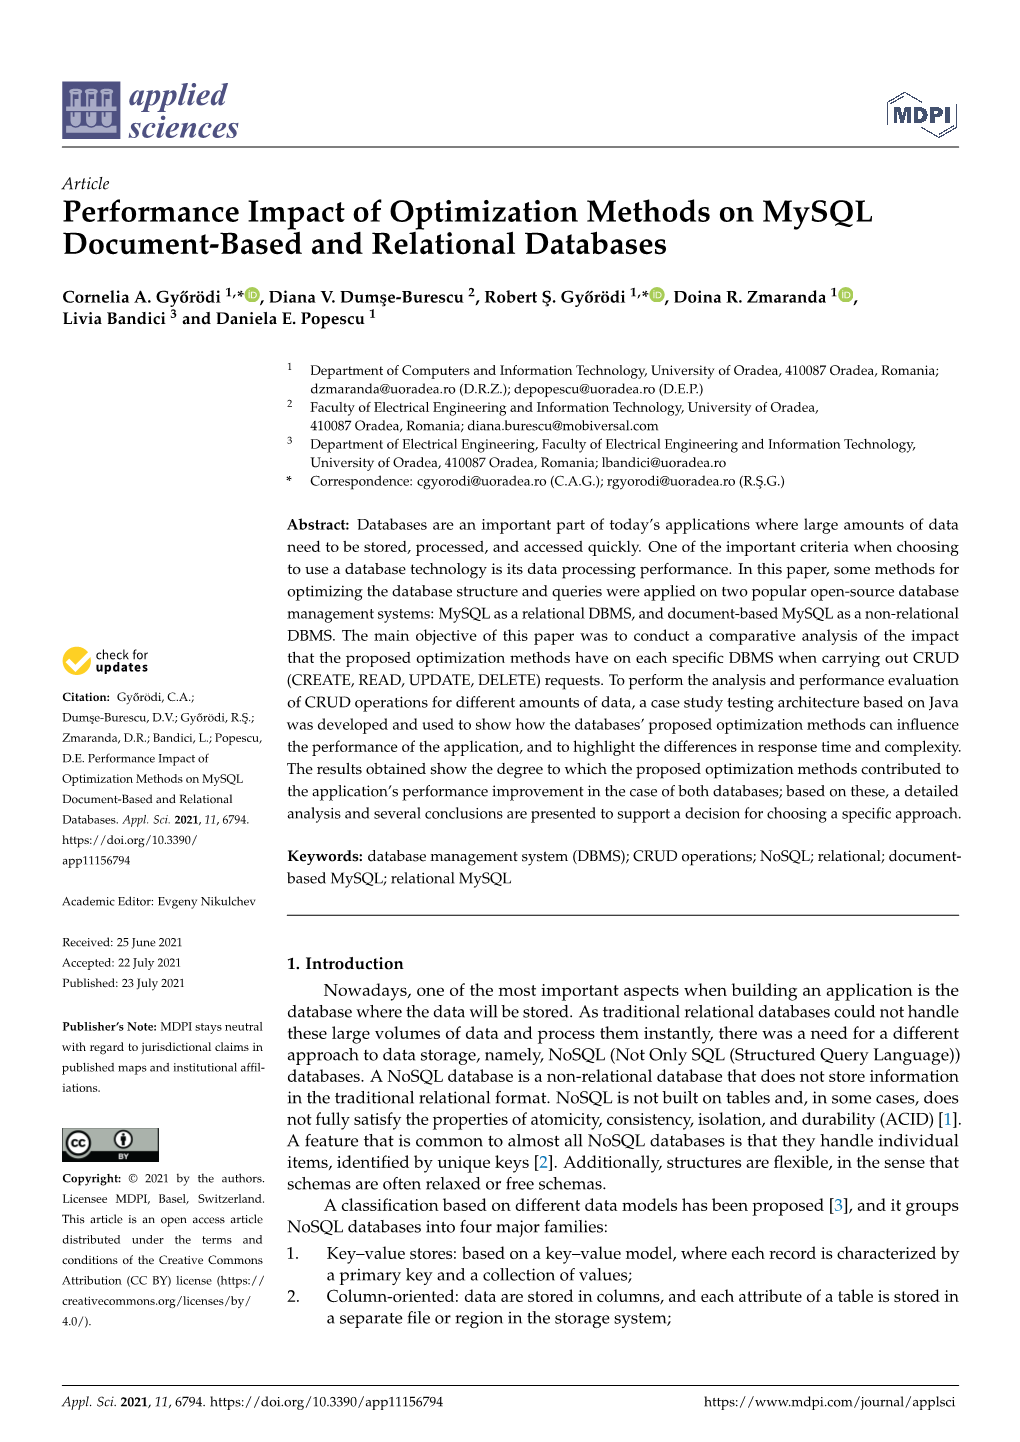 Performance Impact of Optimization Methods on Mysql Document-Based and Relational Databases